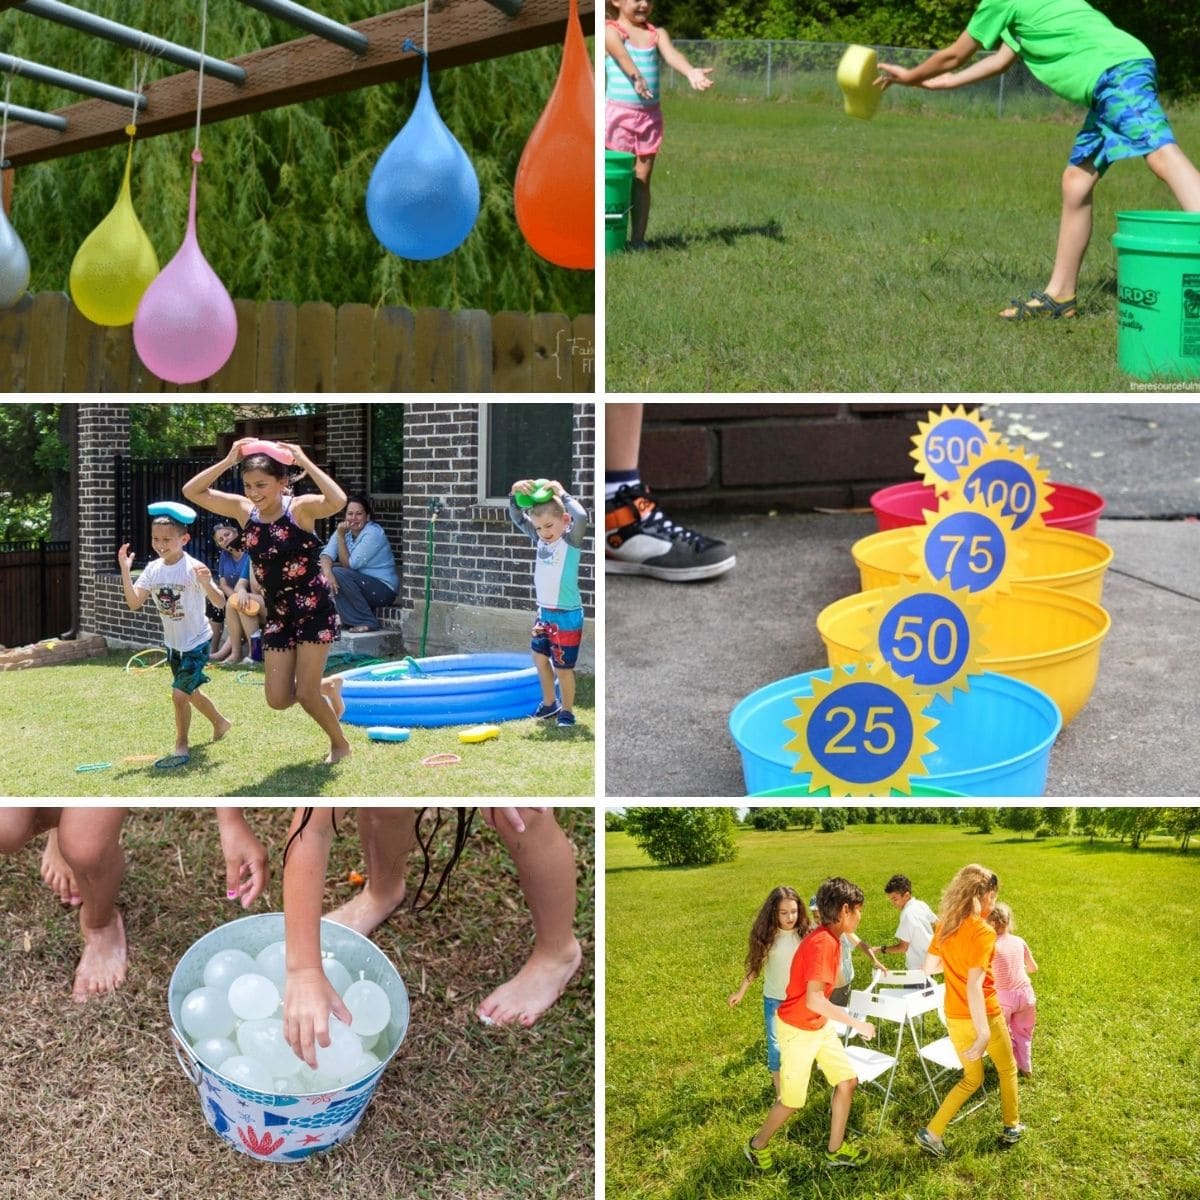 Gedragen alledaags met de klok mee 33 Fun And Splashy Water Games For The Whole Family - Playtivities